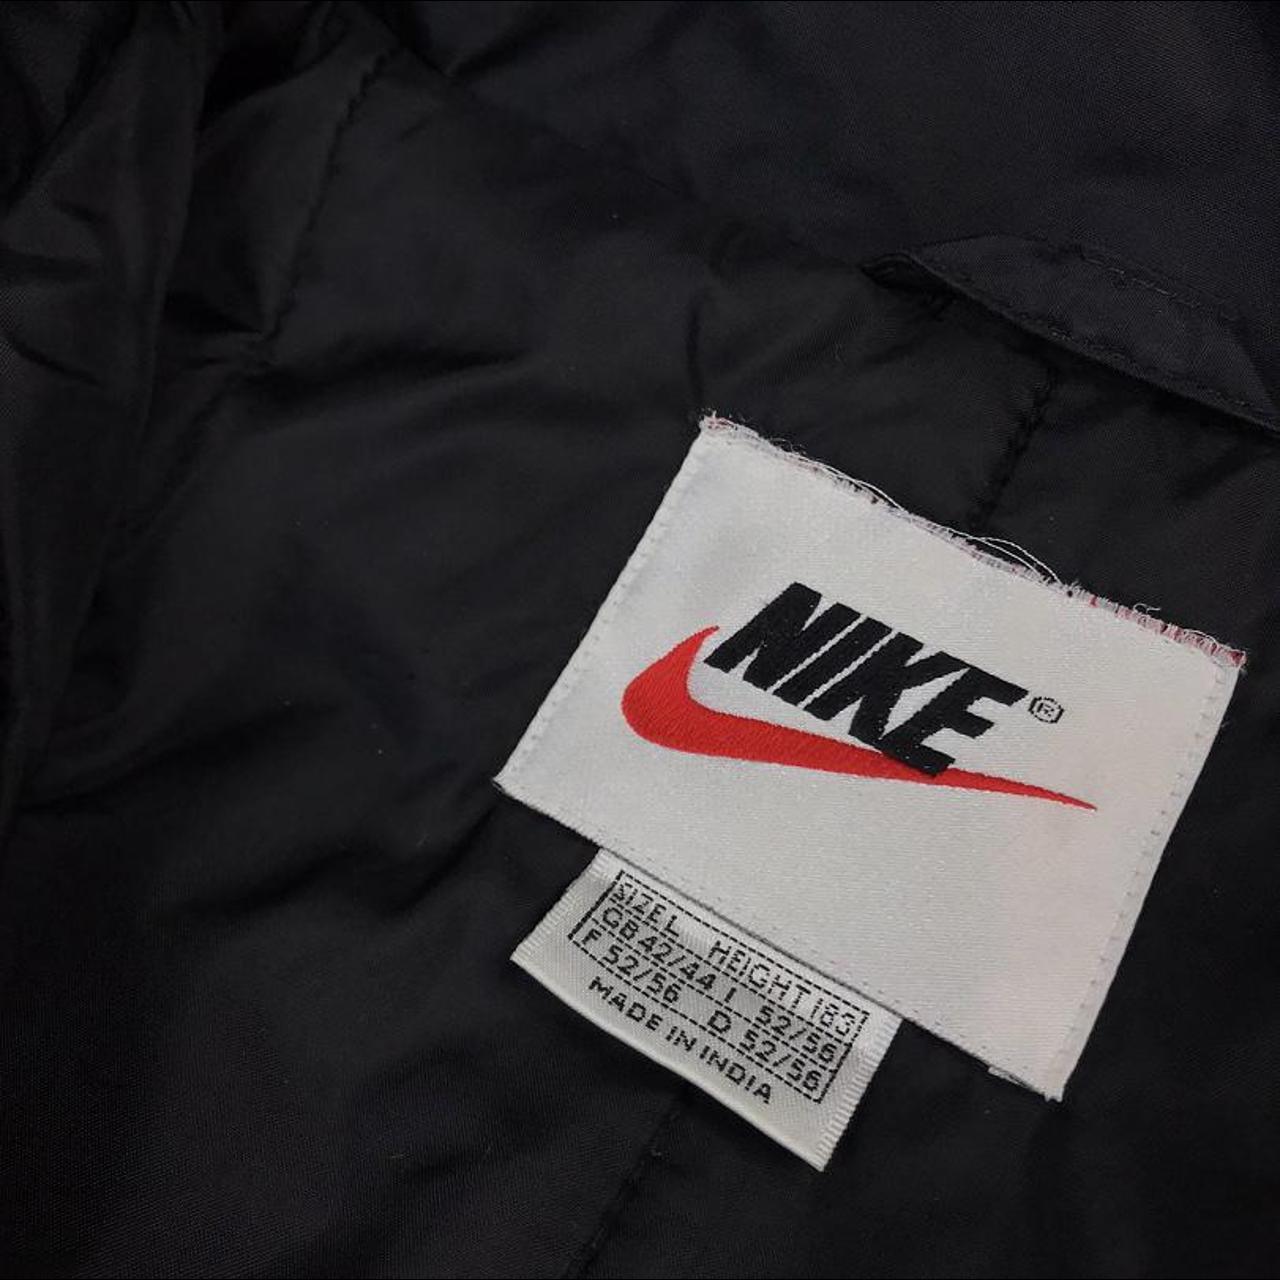 Vintage Nike jacket black and red super good quality... - Depop